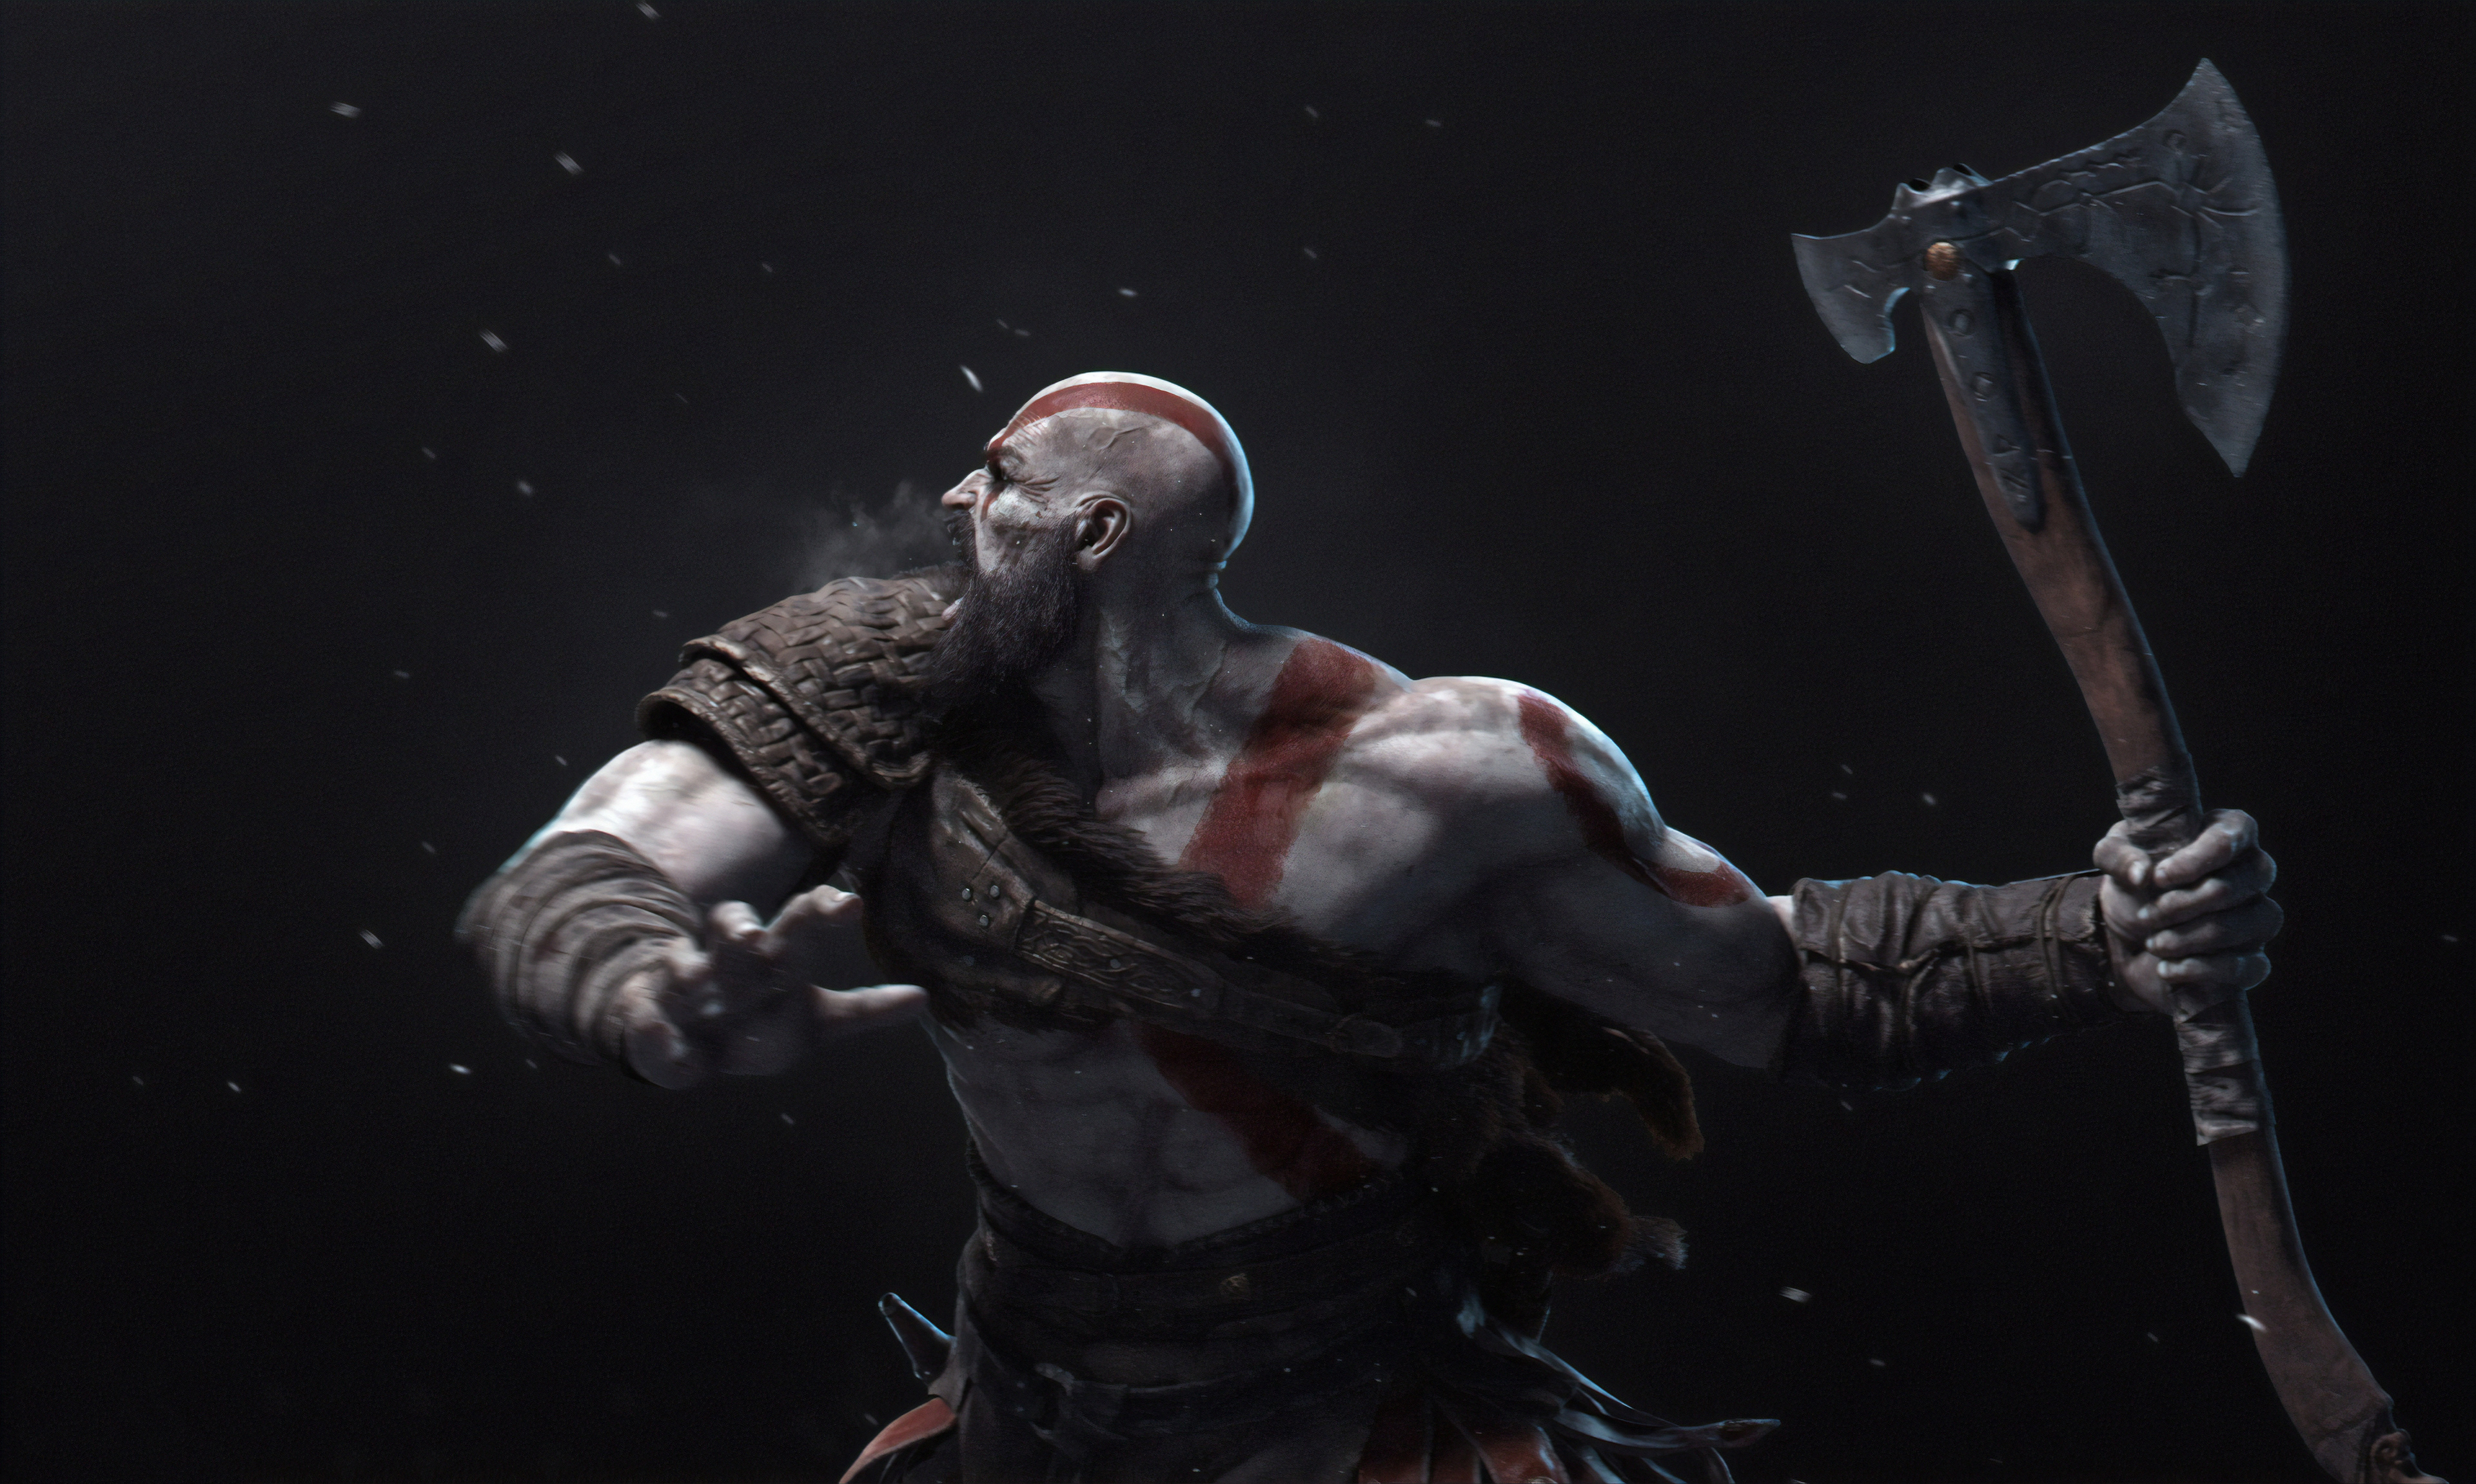 kratos (god of war), god of war, video game, axe, warrior